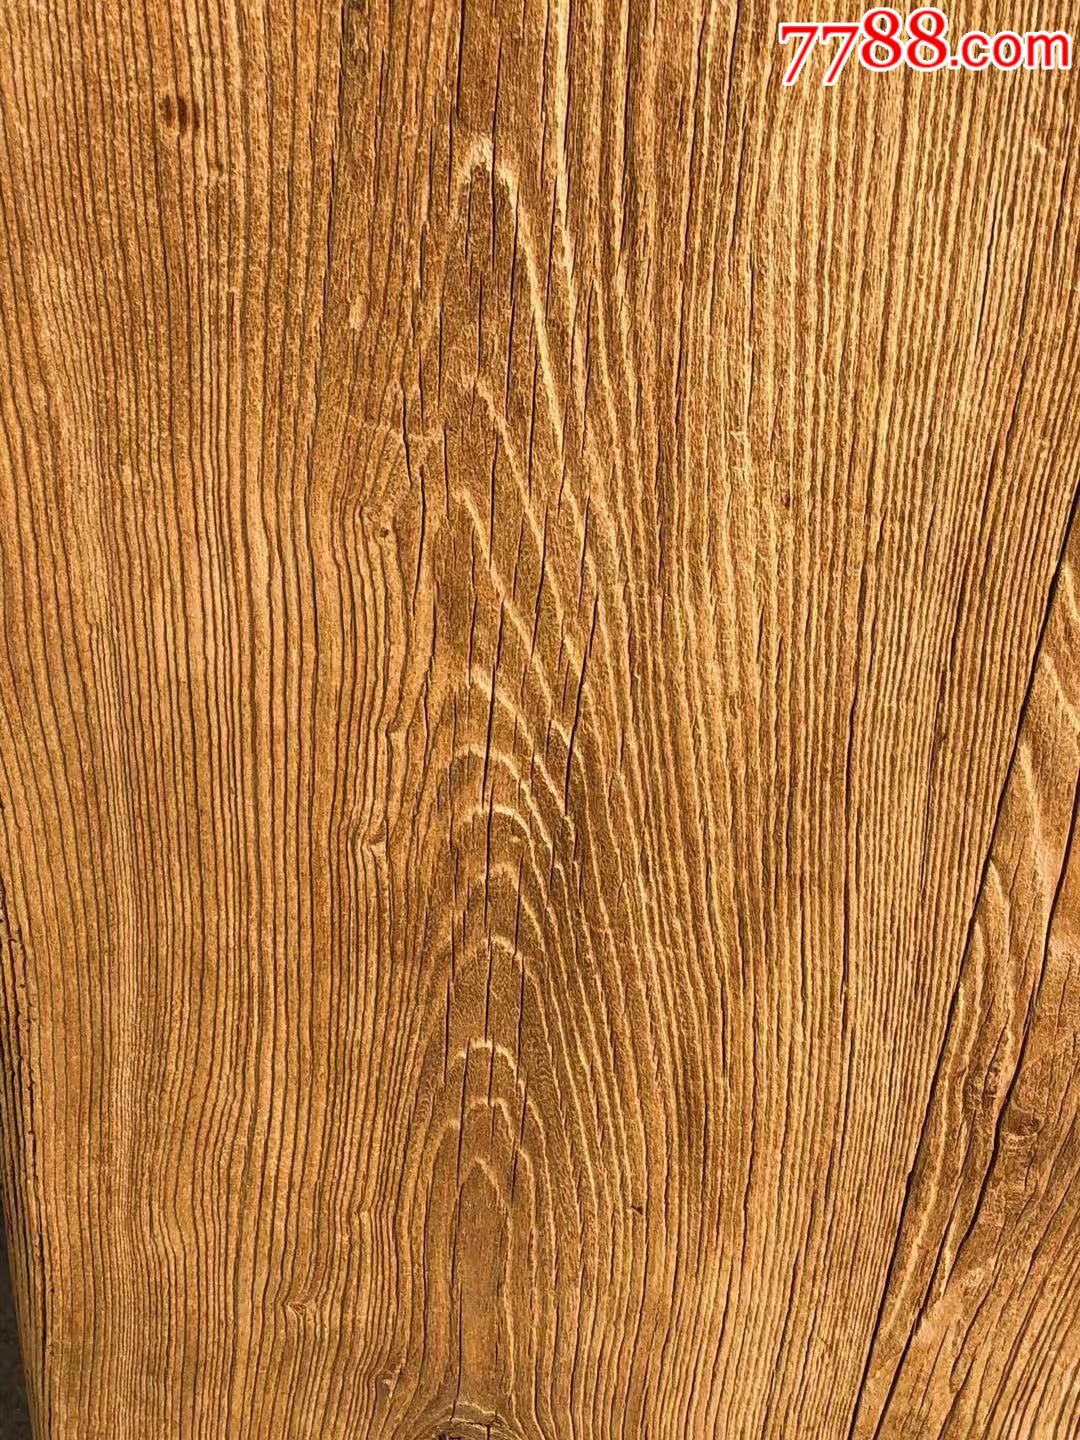 榆木门板一对自然风化纹理清晰无修补全品包老已清洗